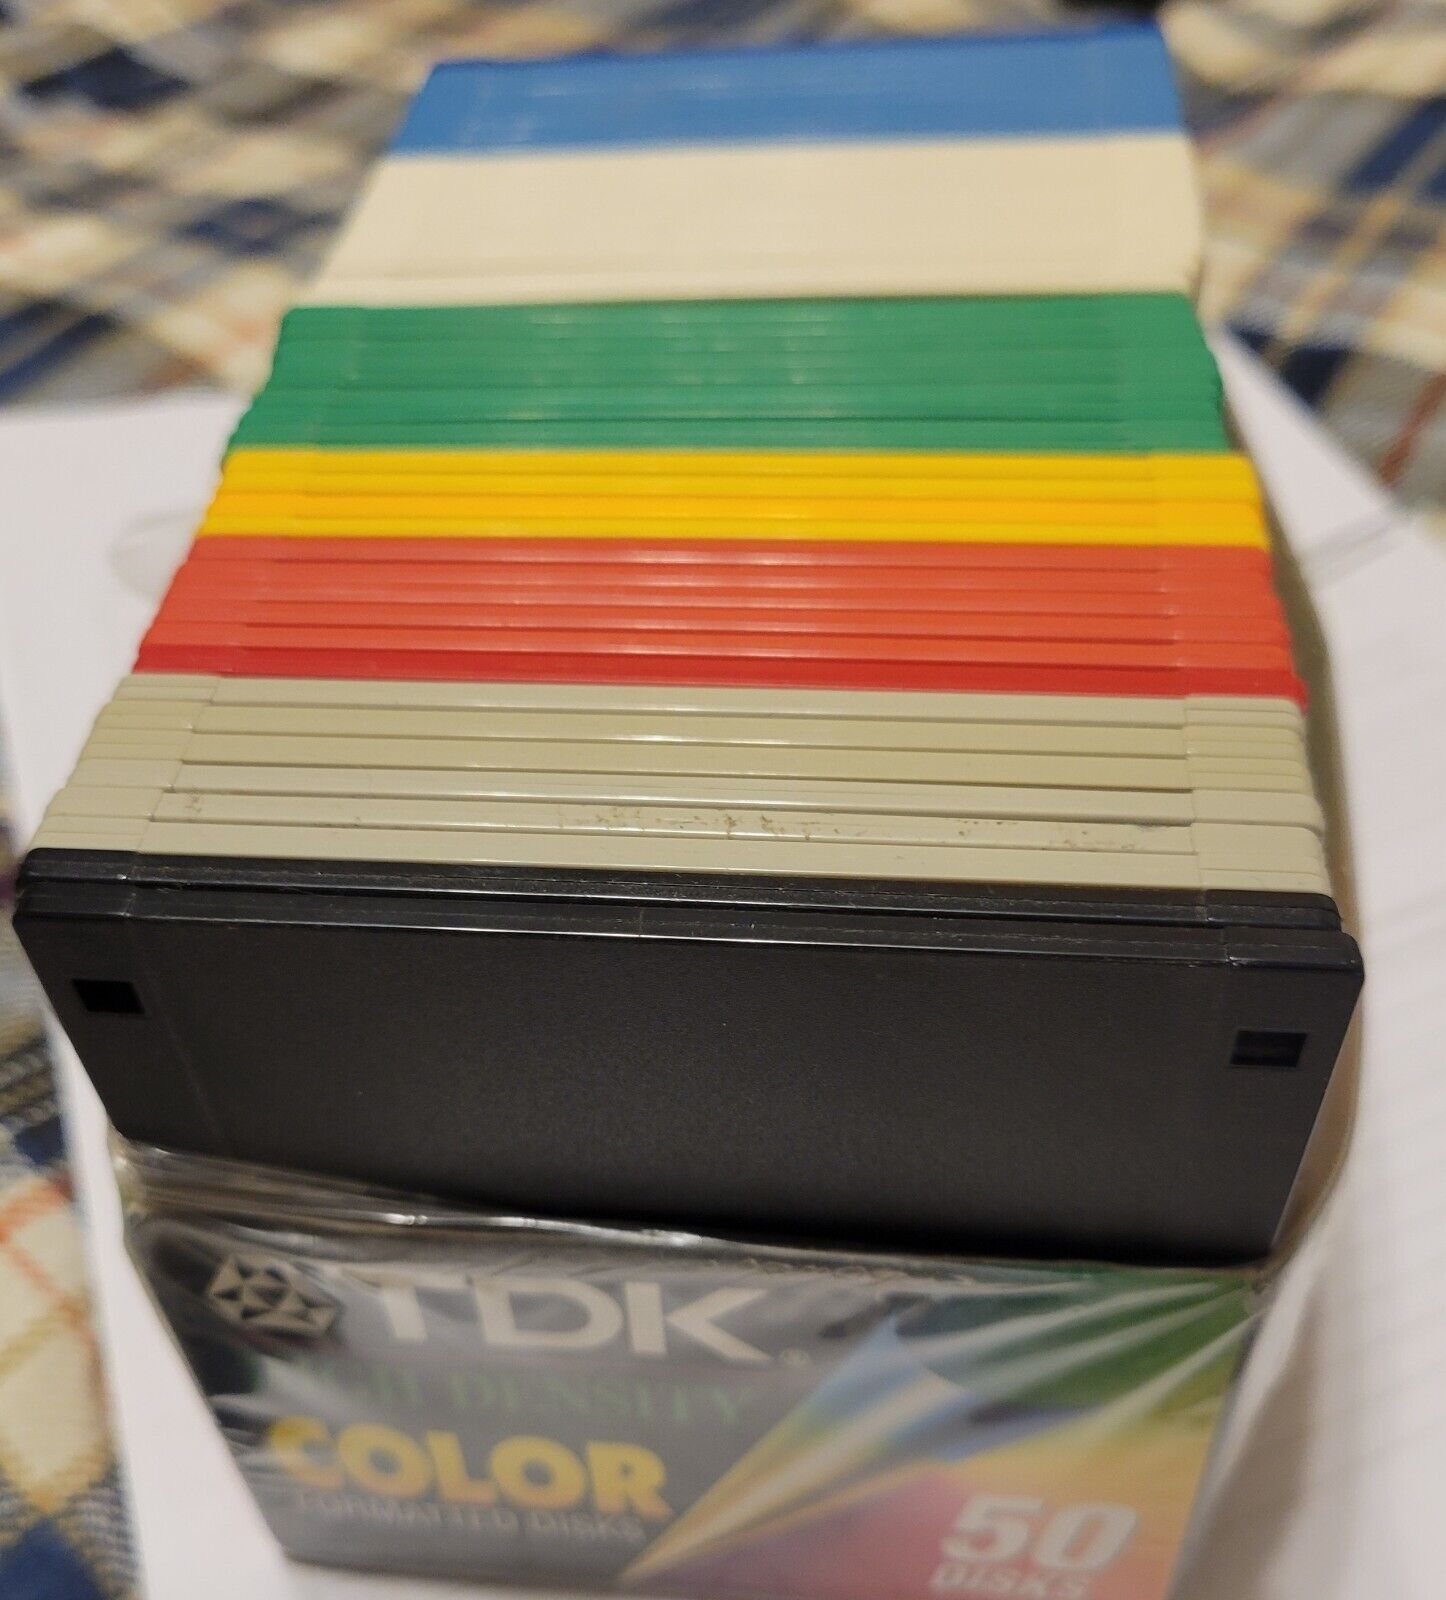 TDK High Density  IBM DOS Formatted Color Disks MF-2HD open box    46 left